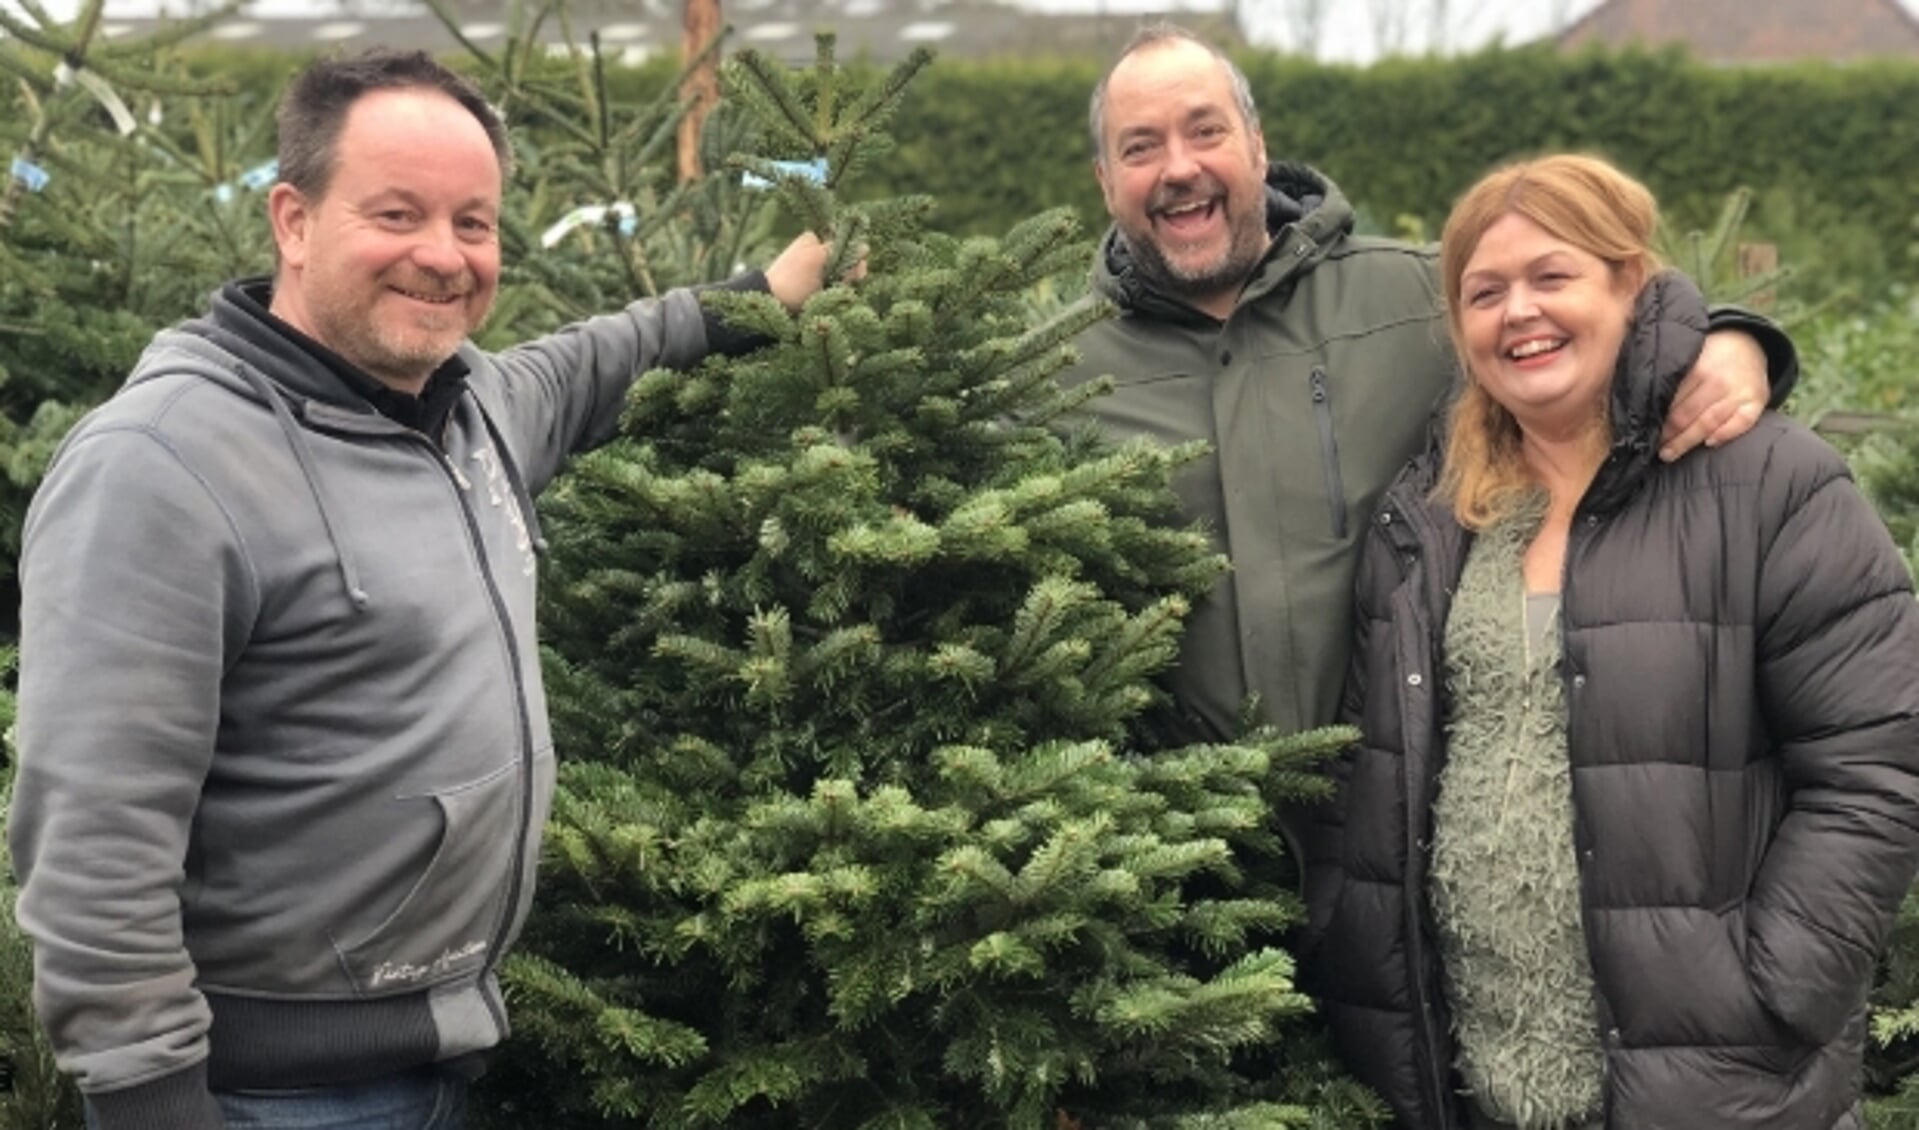 Kees Haak gaat samen met z’n vrouw Monique en maat Hans Dievenbach kerstbomen verkopen voor de Voedselbank Zeist.